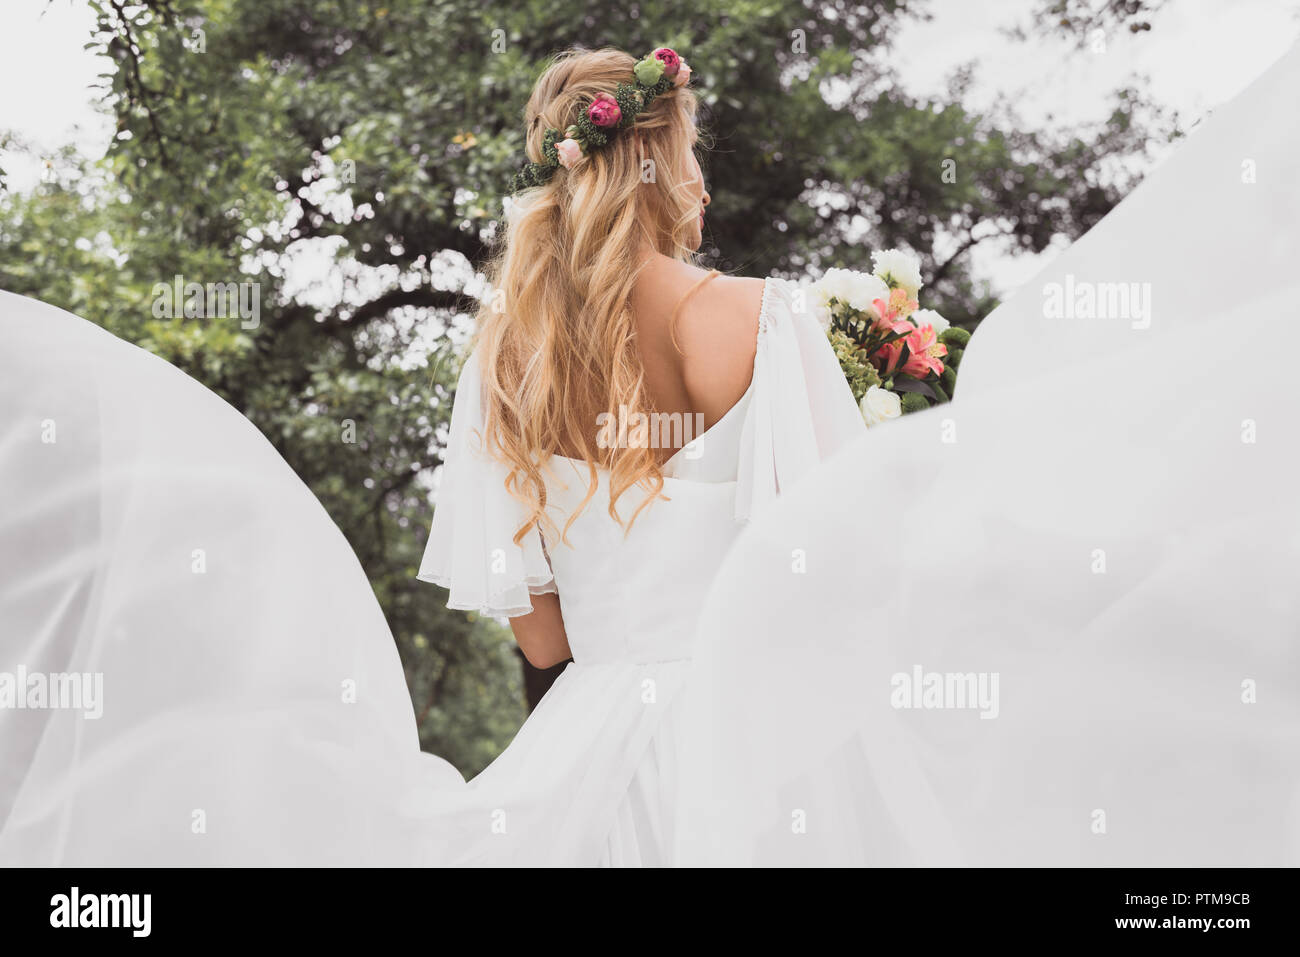 Rückansicht der blonde junge Braut im Brautkleid holding Blumenstrauß im Freien Stockfoto